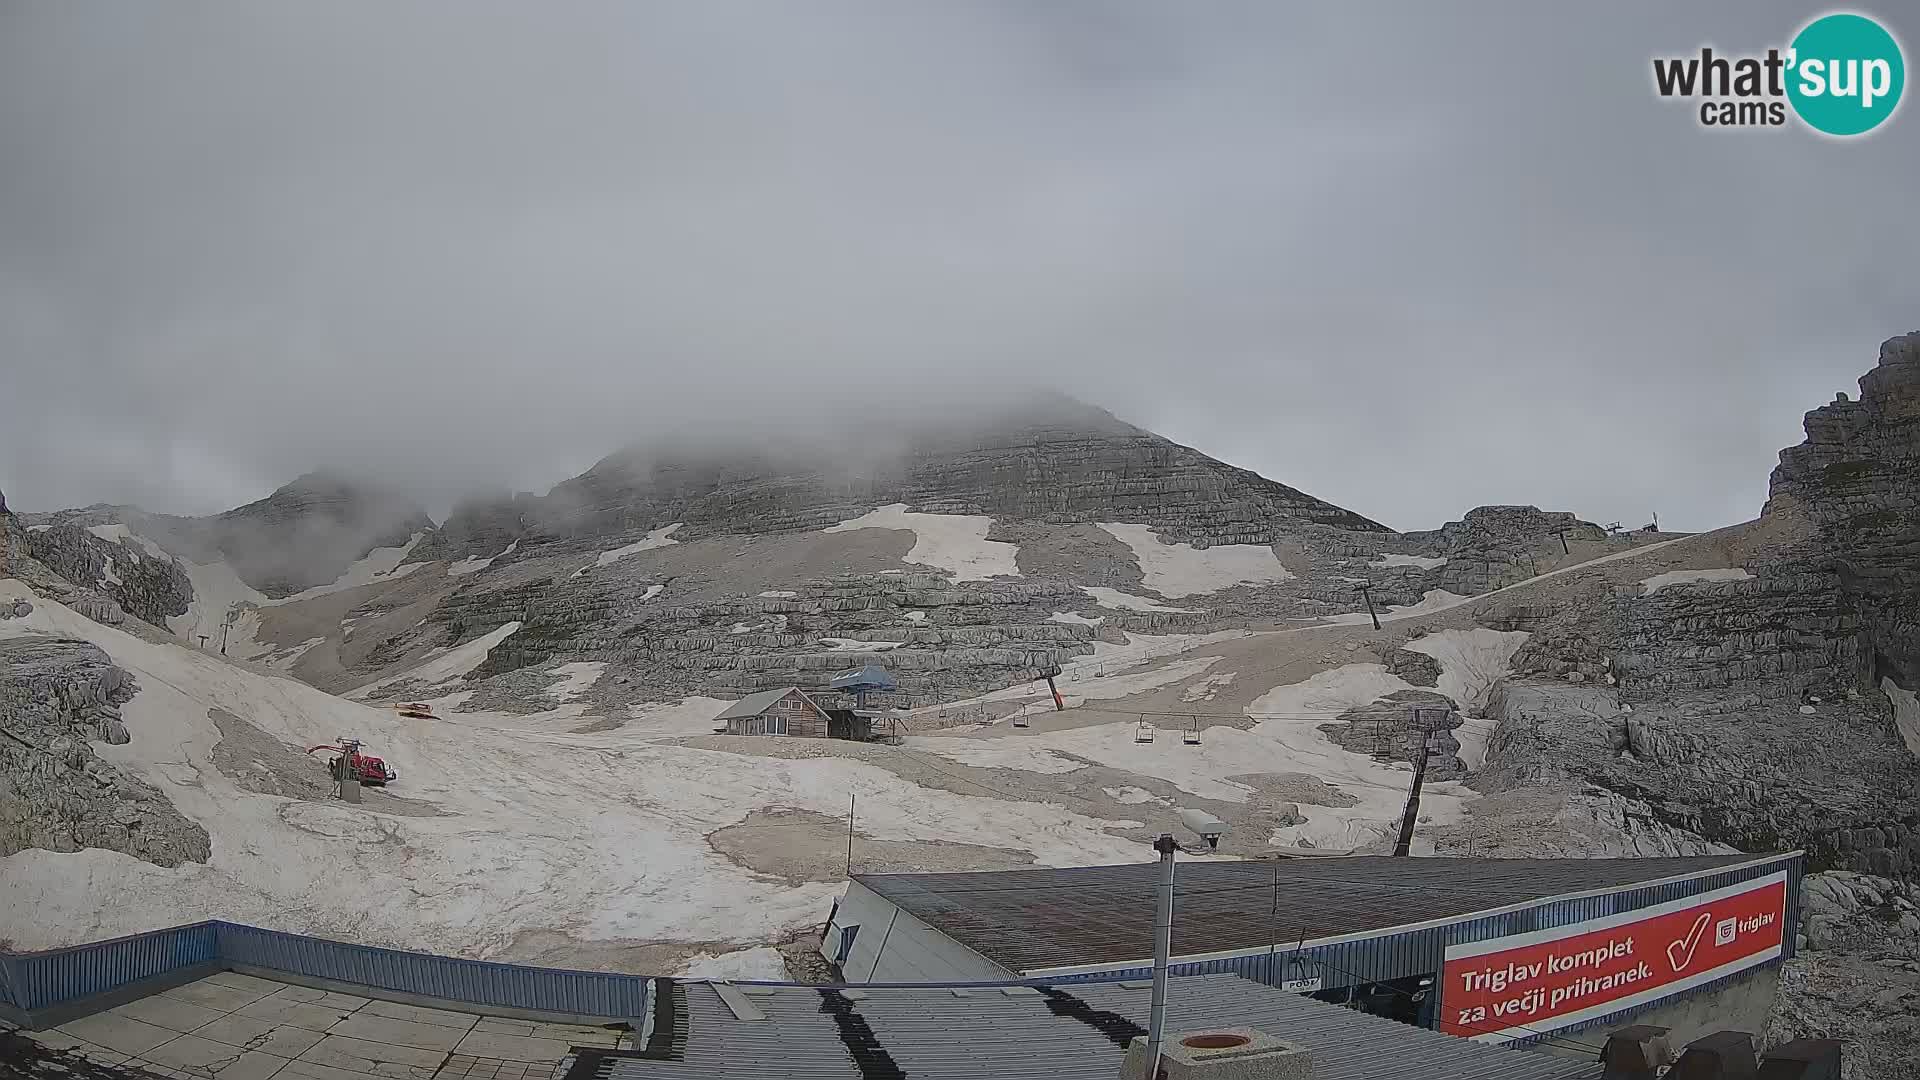 Station de ski Kanin – Prestreljenik